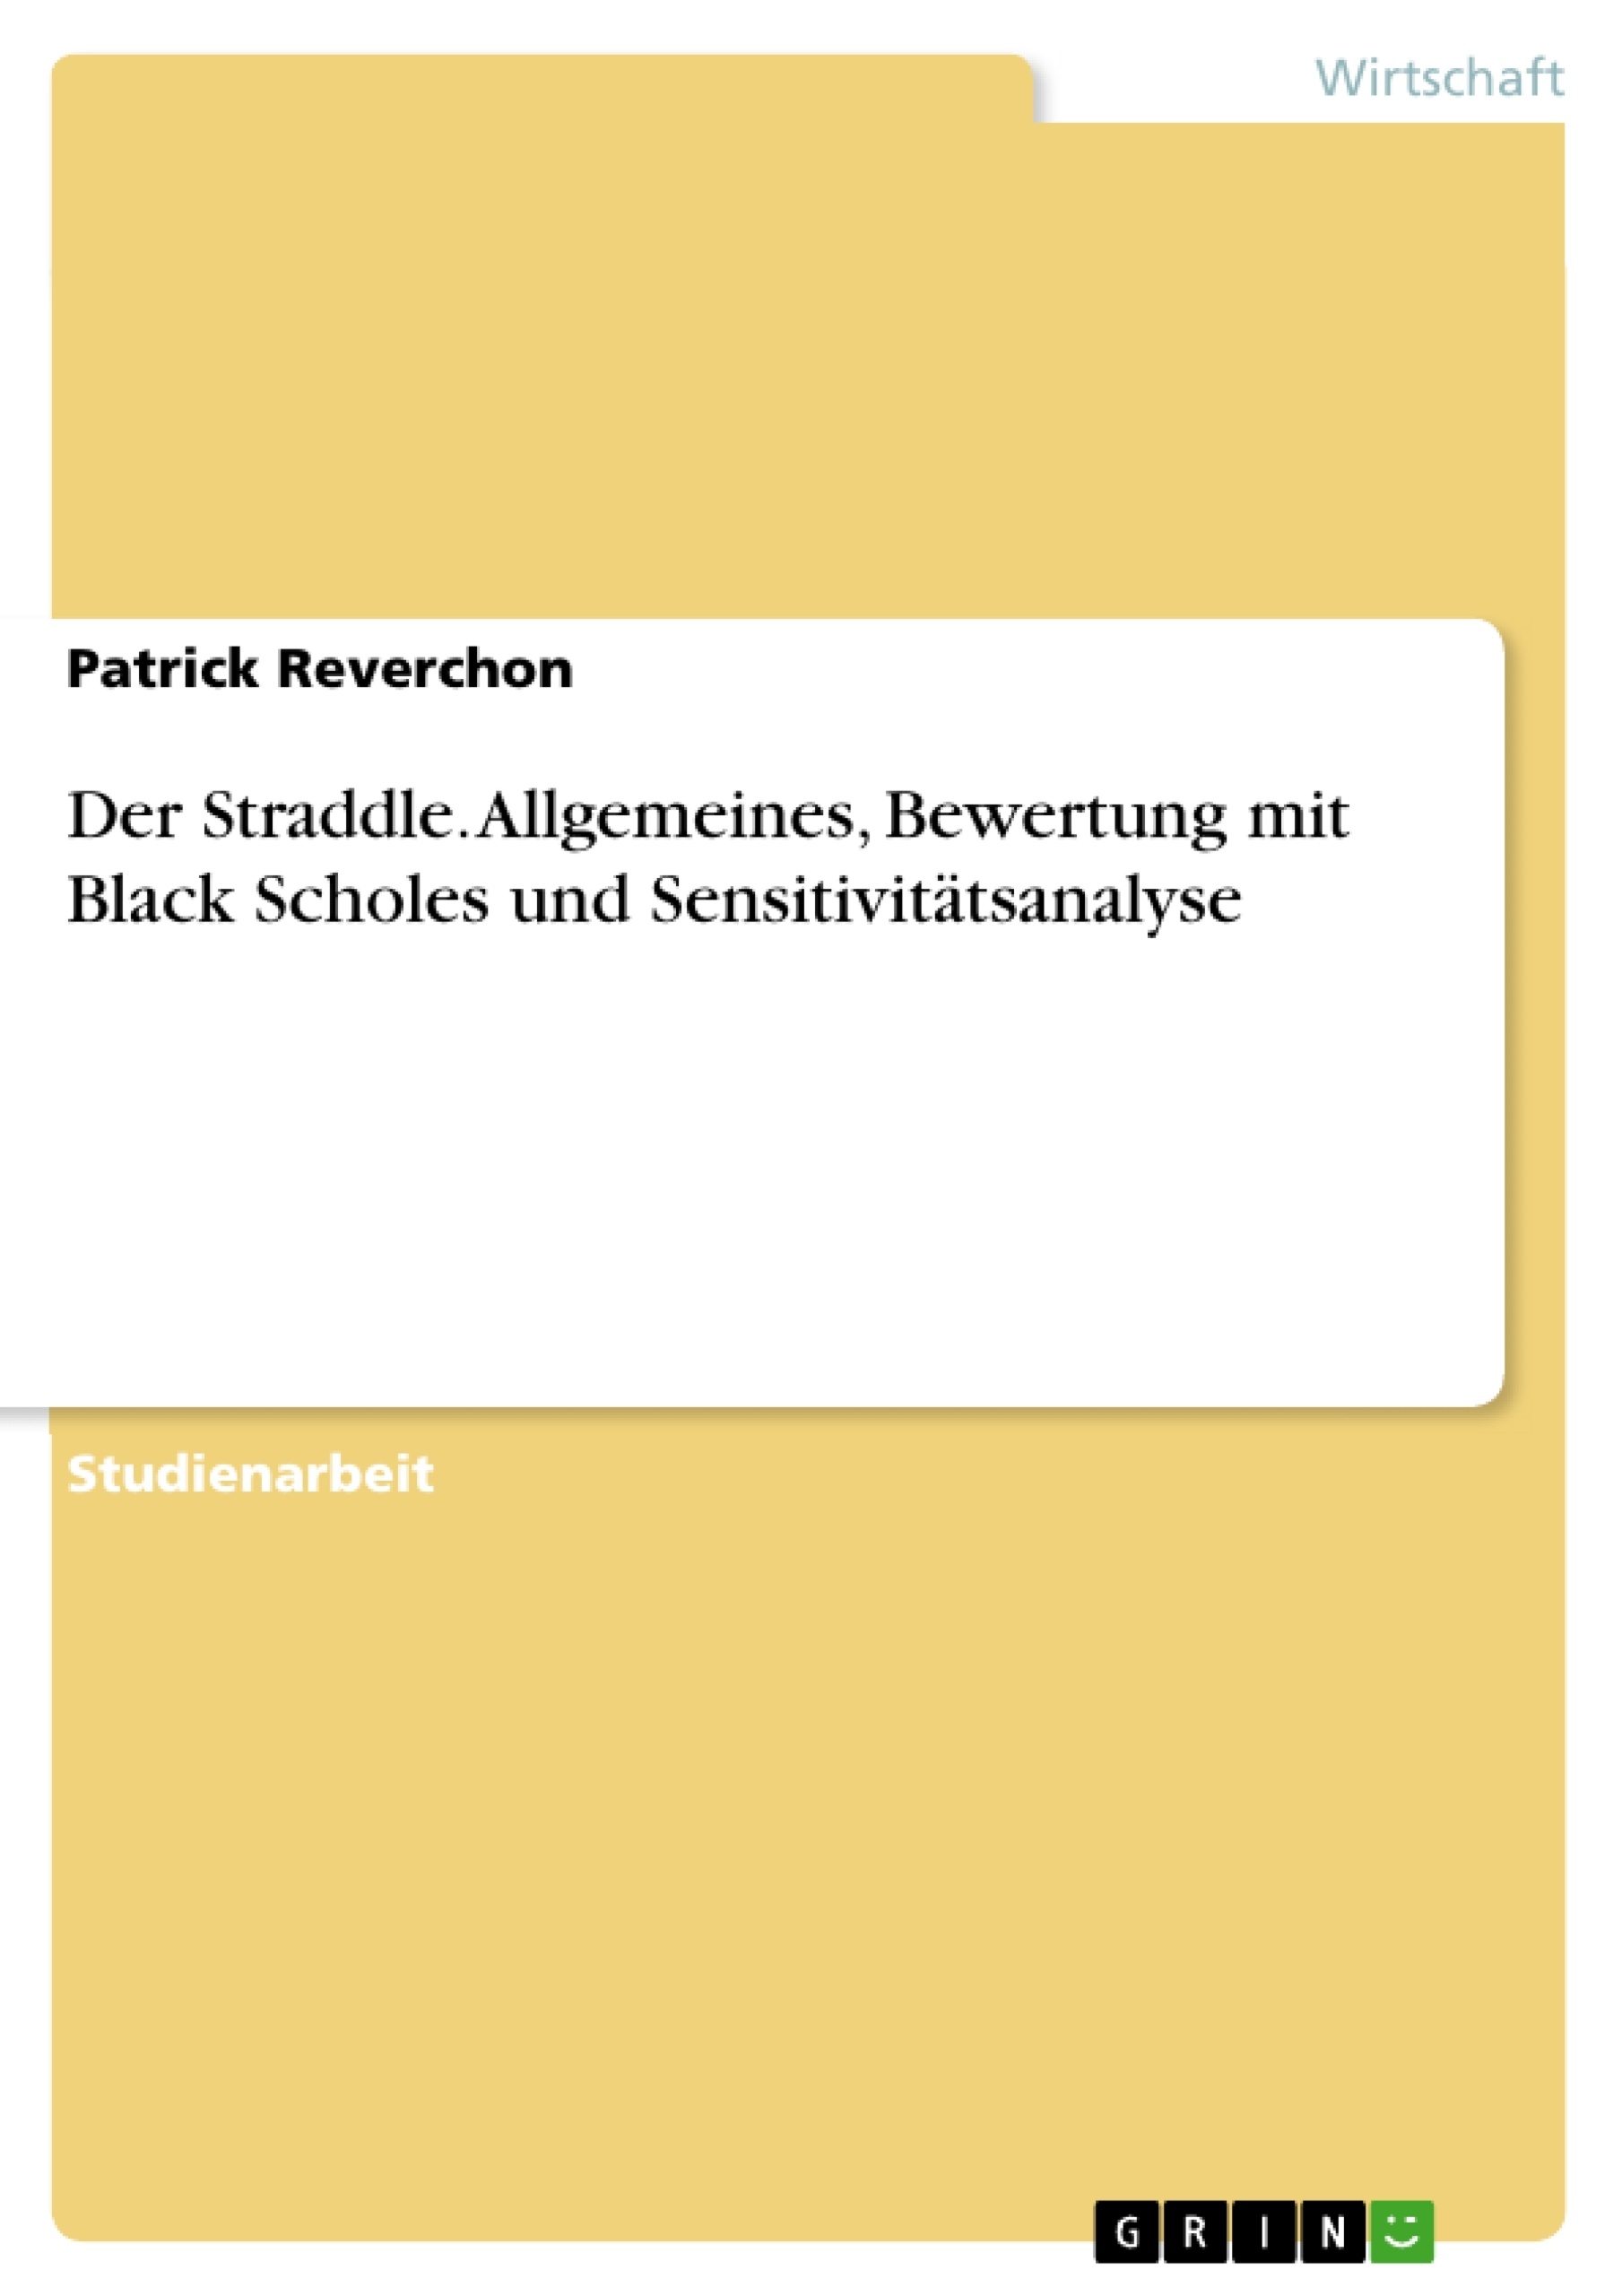 Título: Der Straddle. Allgemeines, Bewertung mit Black Scholes und Sensitivitätsanalyse